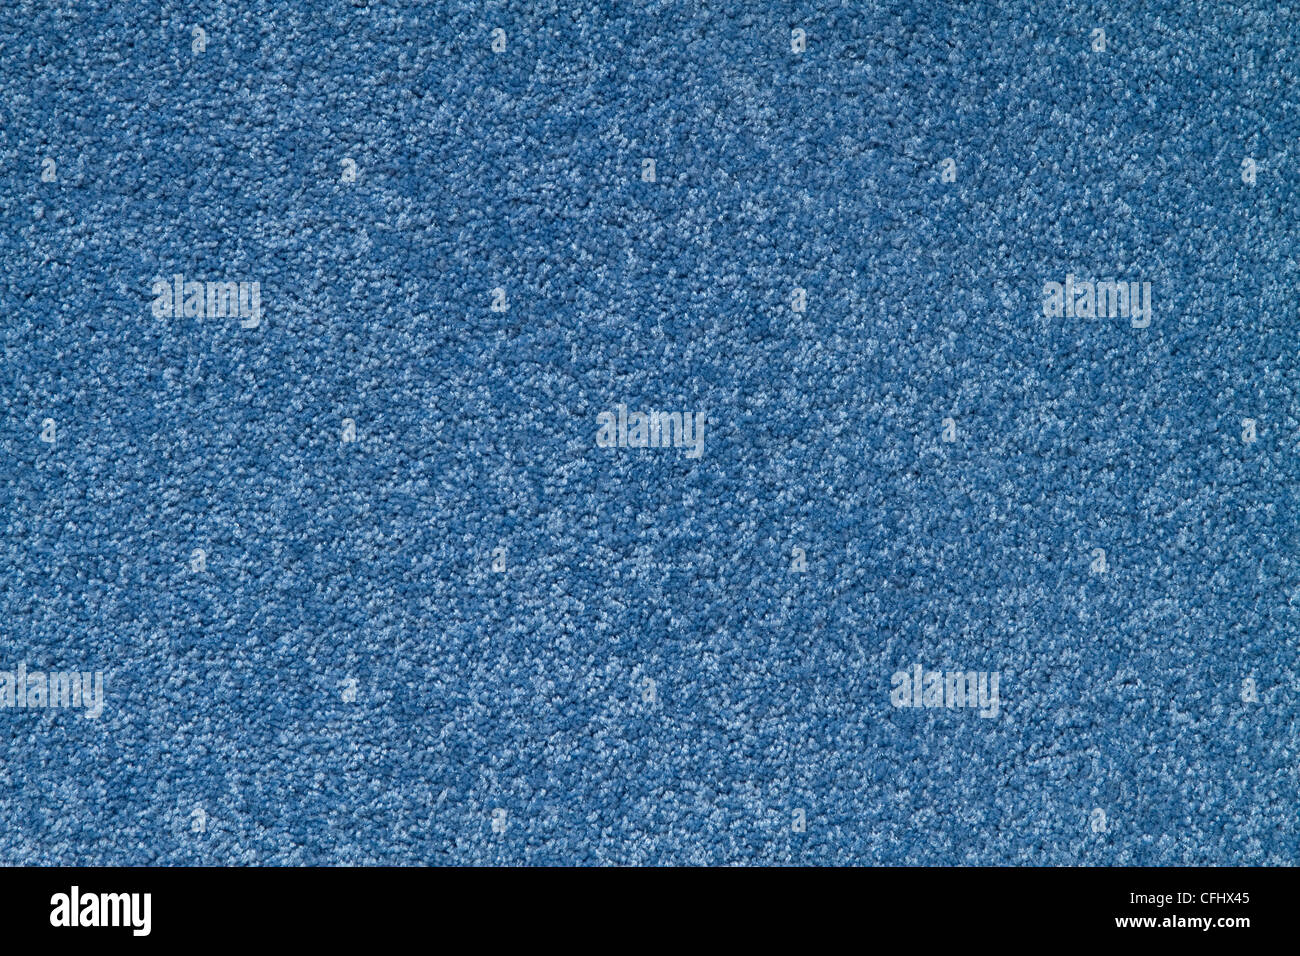 La texture d'un tapis de couleur bleu avec des tas. Banque D'Images